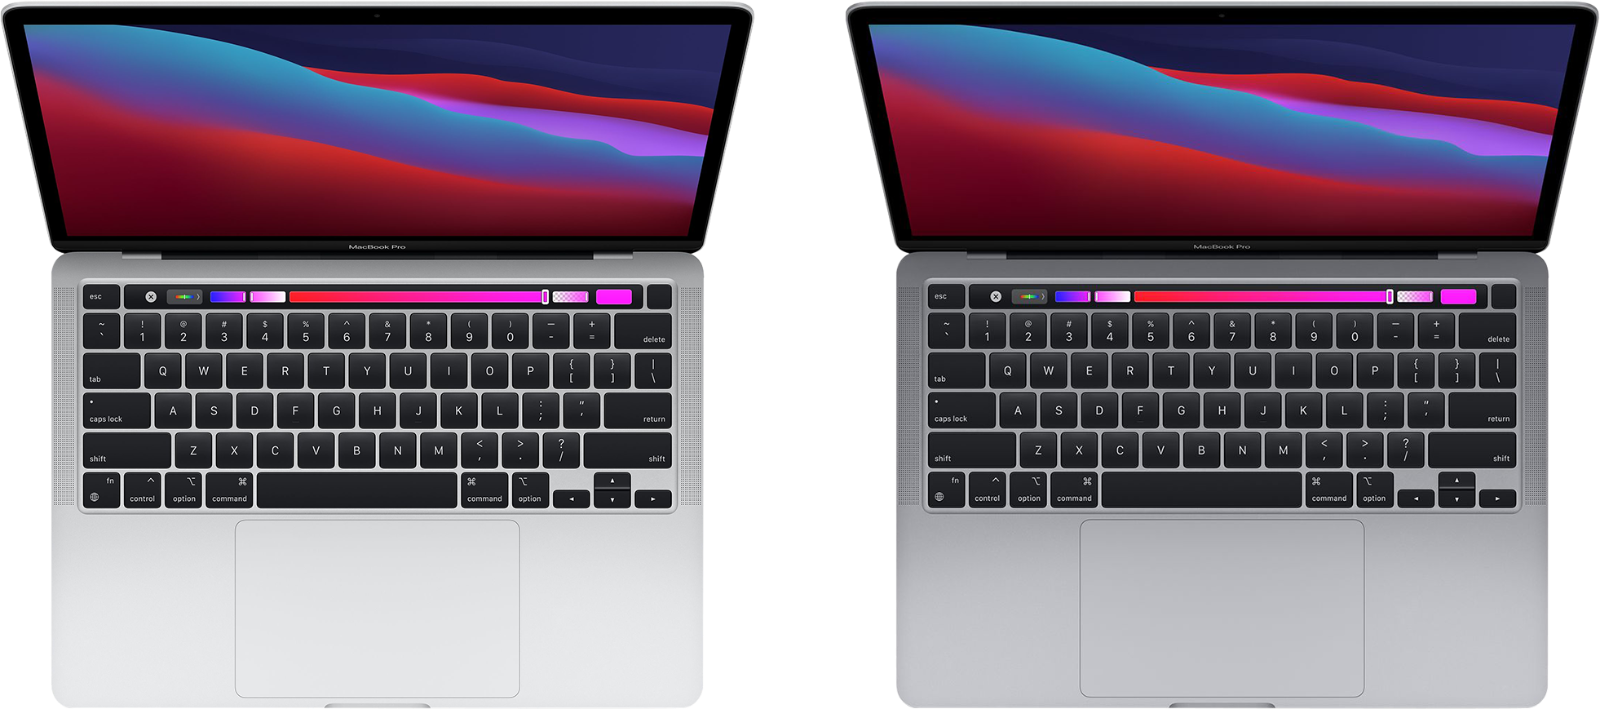 MacBook Pro (13 pulgadas, M1, 2020) - Especificaciones técnicas (ES)